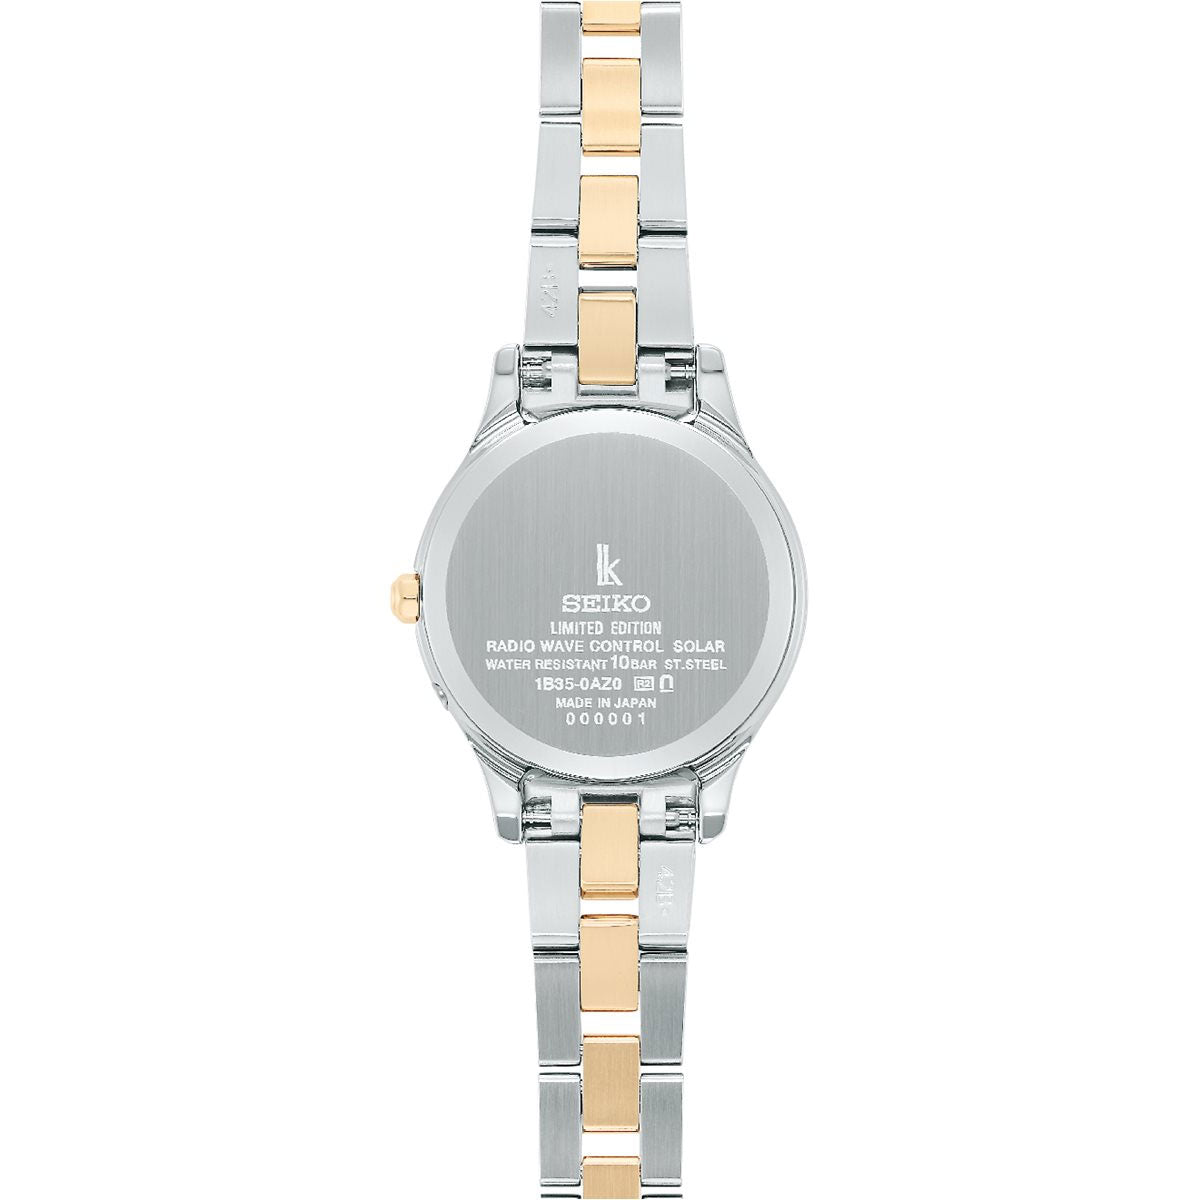 セイコー ルキア SEIKO LUKIA 電波 ソーラー ワールドタイム 電波時計 2023 Holiday Season Limited Edition 腕時計 レディース SSVV086